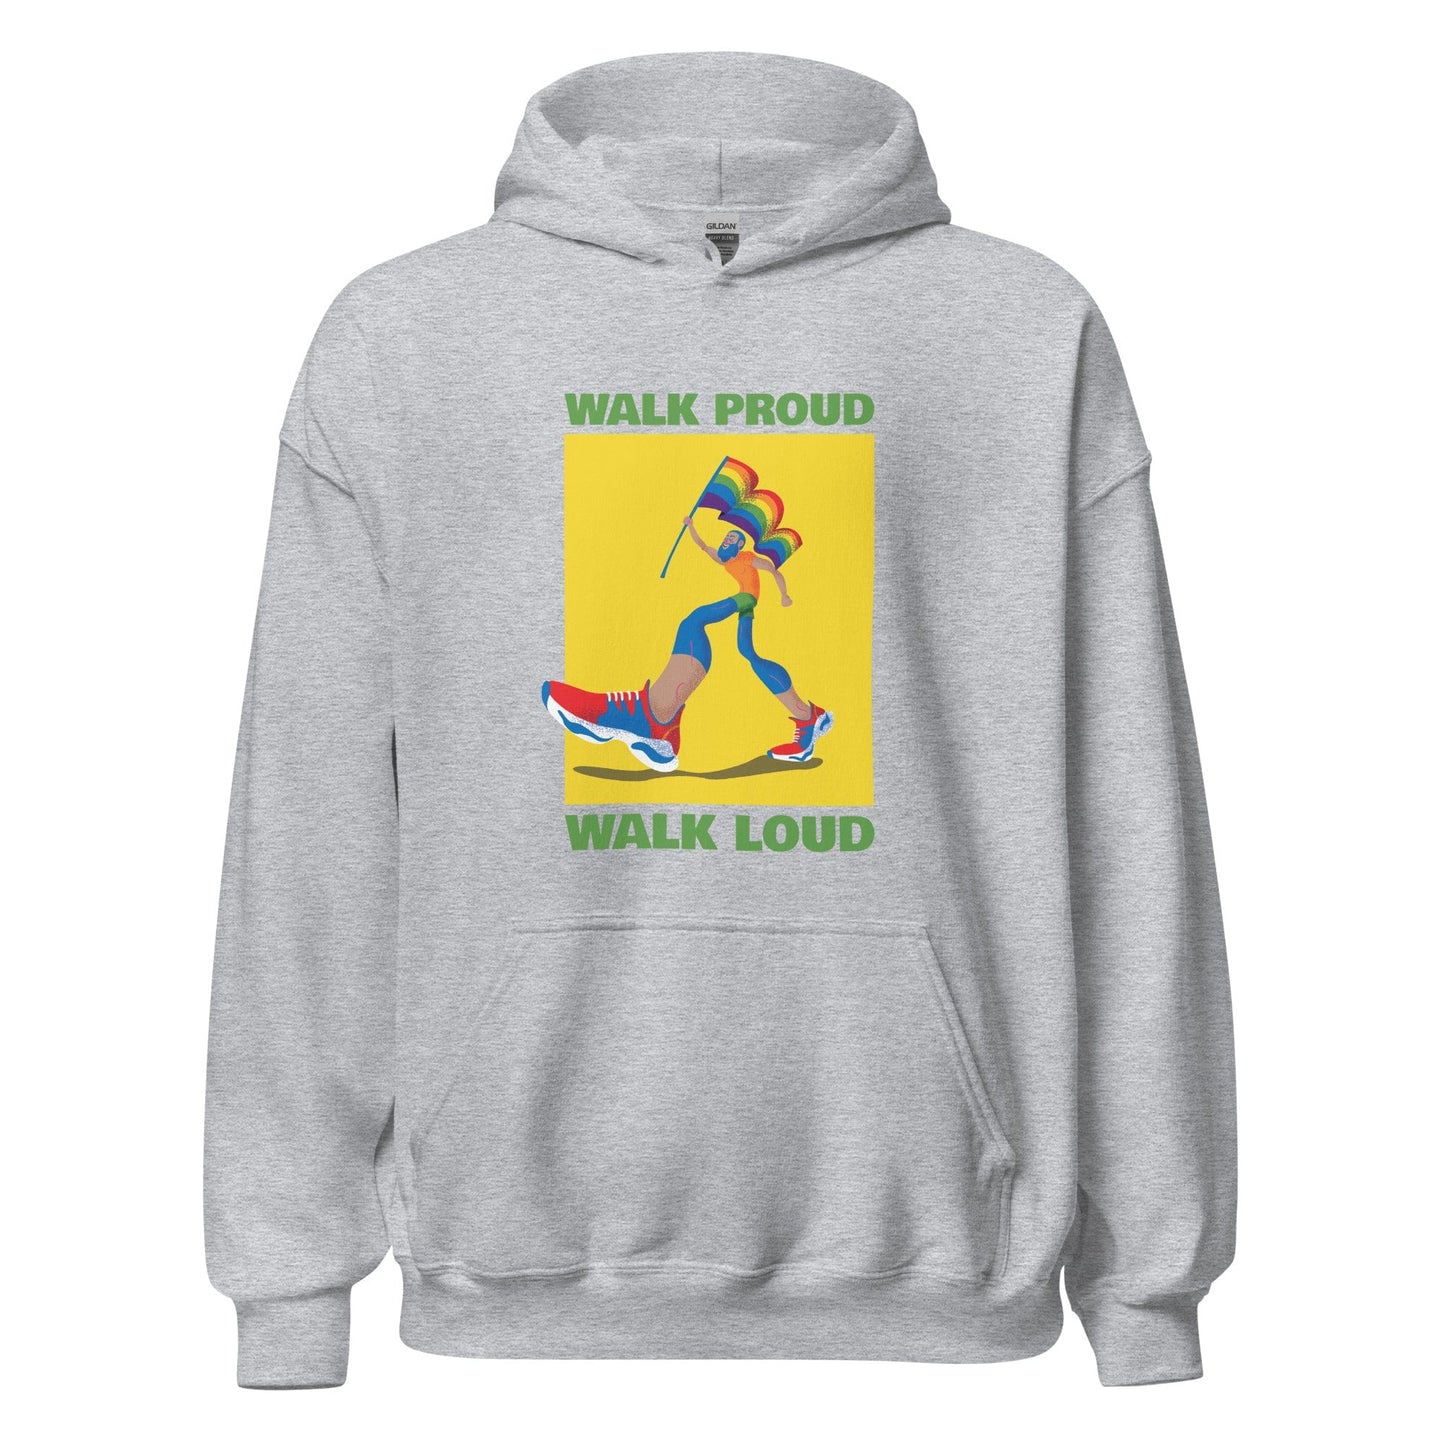 queer-pride-hoodie-walk-proud-walk-loud-lgbtq-gay-apparel-grey-front